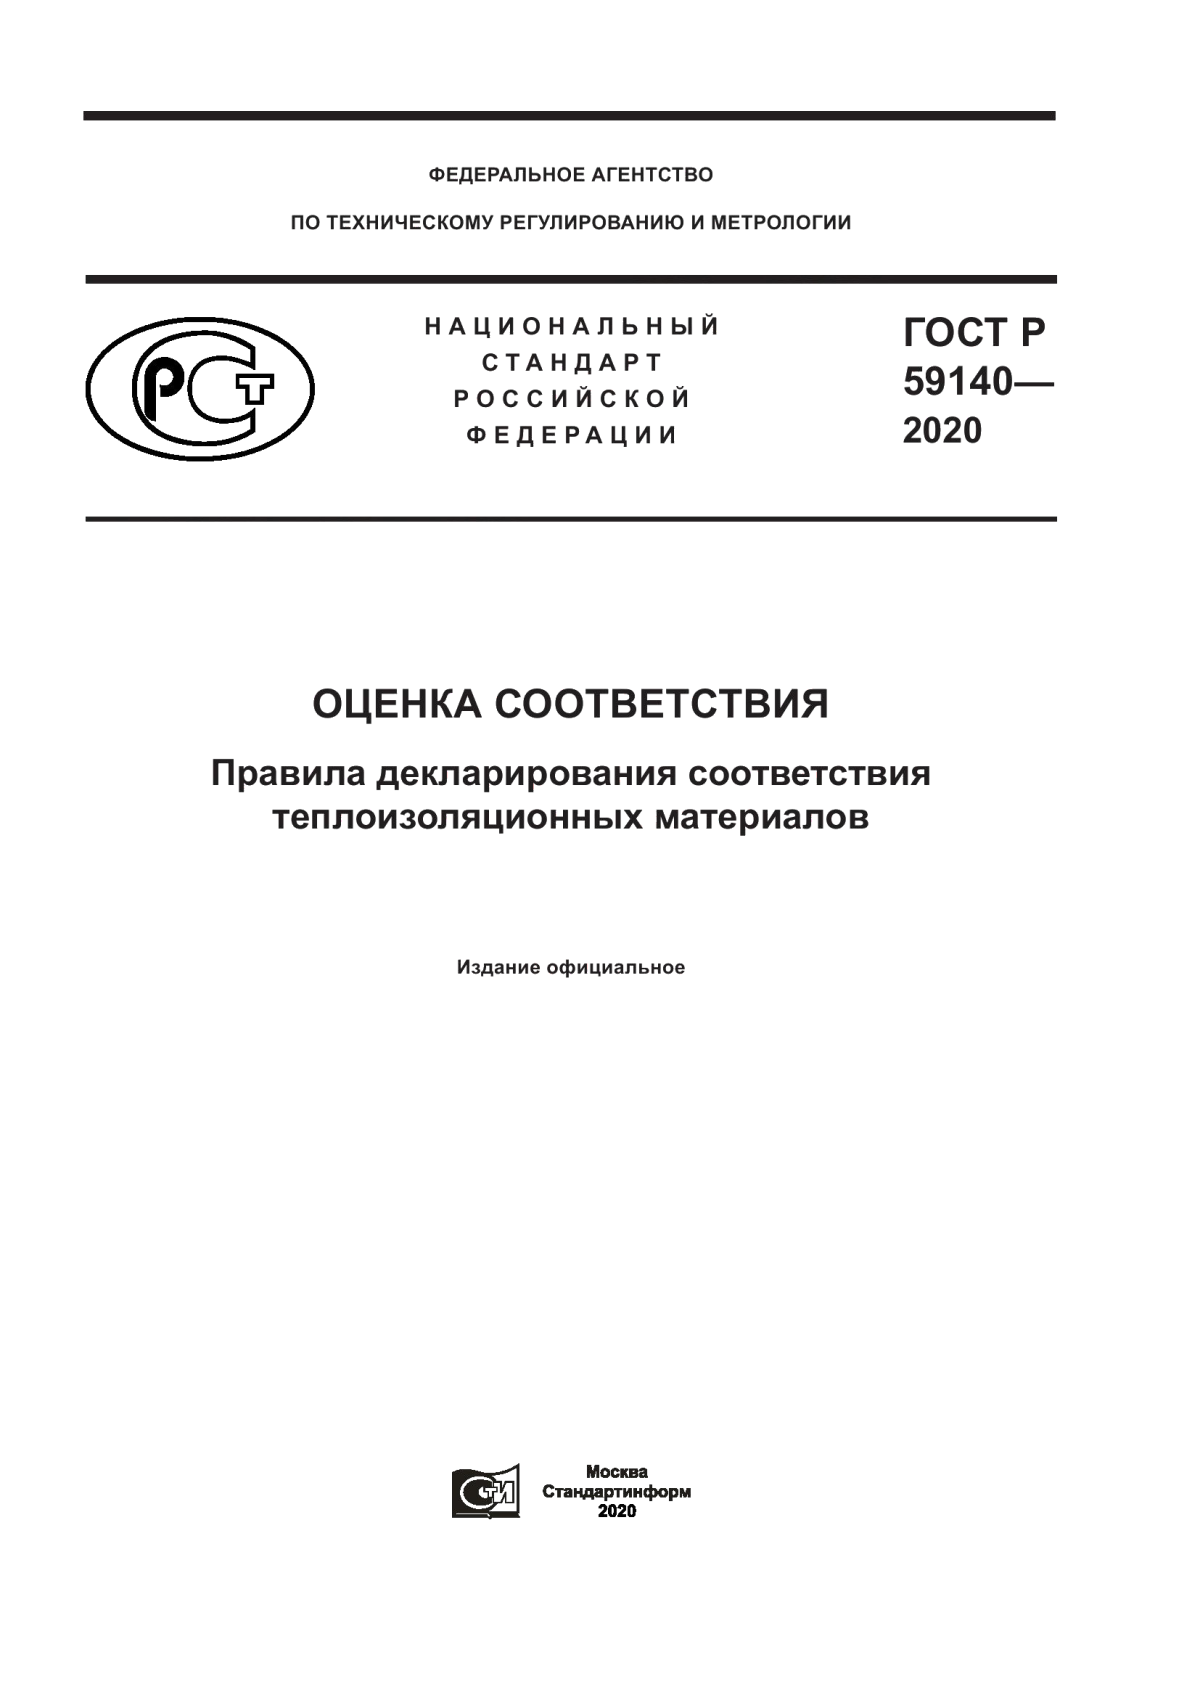 ГОСТ Р 59140-2020 Оценка соответствия. Правила декларирования соответствия теплоизоляционных материалов